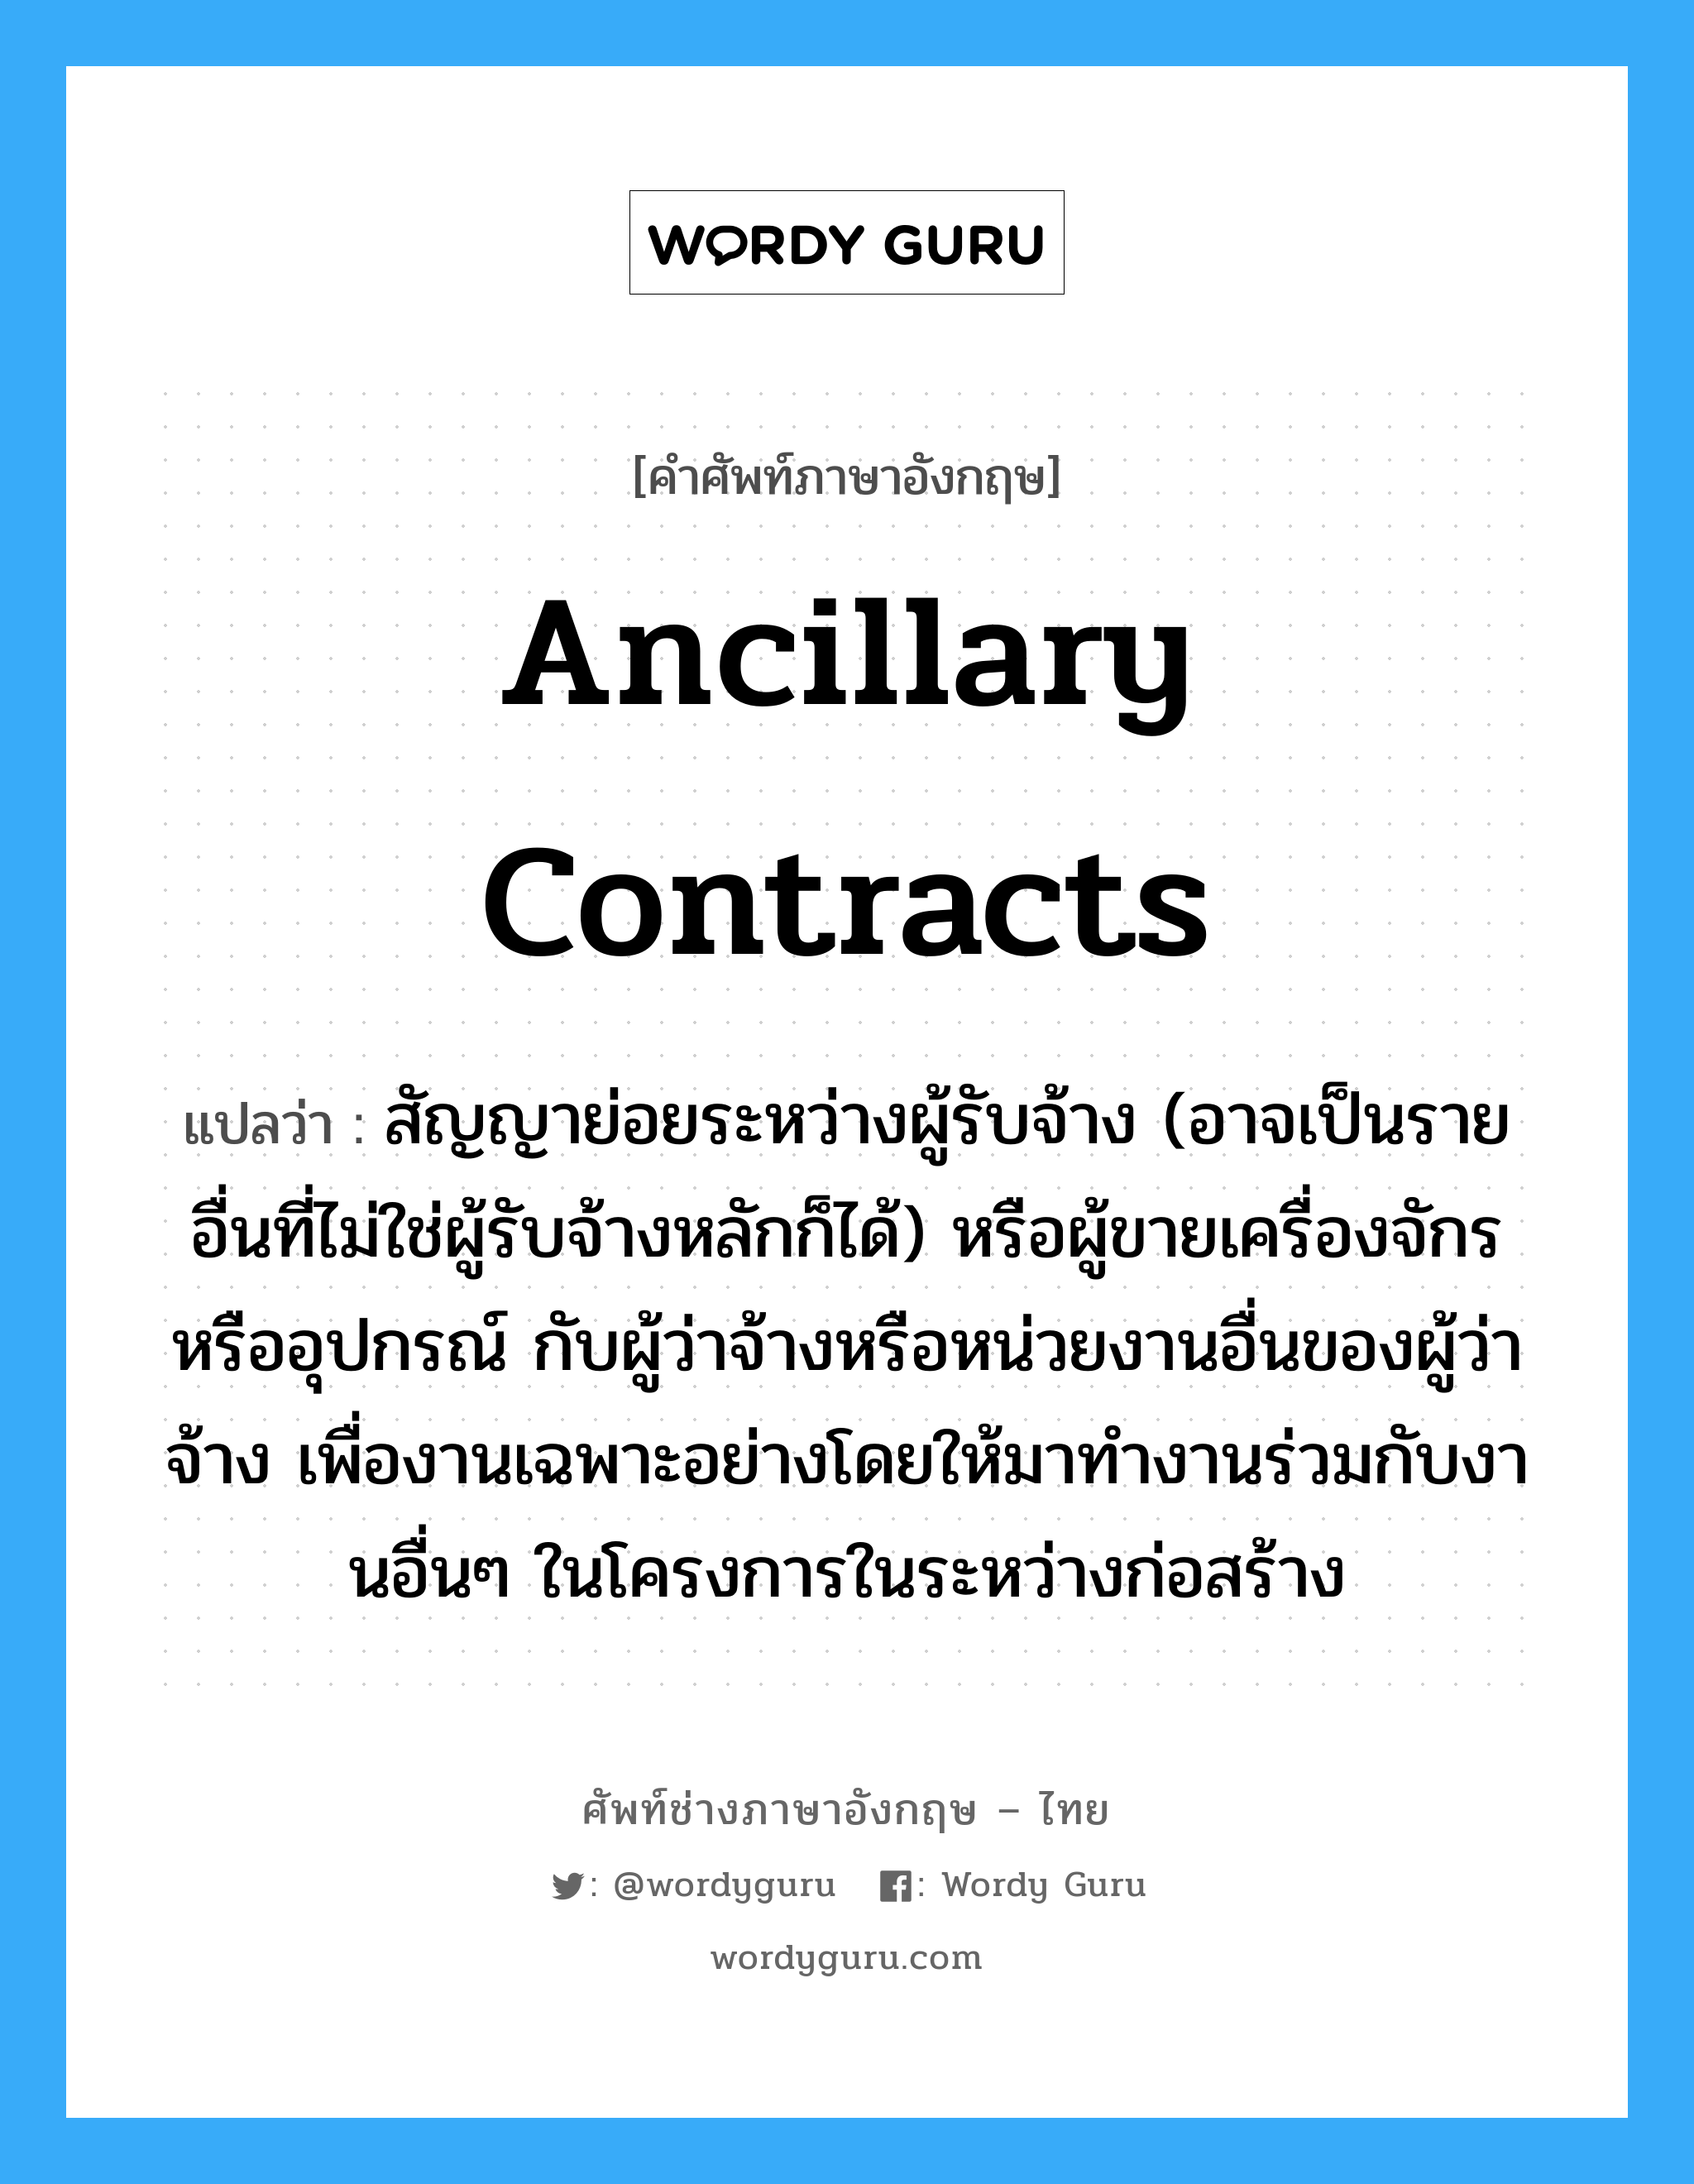 Ancillary Contracts แปลว่า?, คำศัพท์ช่างภาษาอังกฤษ - ไทย Ancillary Contracts คำศัพท์ภาษาอังกฤษ Ancillary Contracts แปลว่า สัญญาย่อยระหว่างผู้รับจ้าง (อาจเป็นรายอื่นที่ไม่ใช่ผู้รับจ้างหลักก็ได้) หรือผู้ขายเครื่องจักรหรืออุปกรณ์ กับผู้ว่าจ้างหรือหน่วยงานอื่นของผู้ว่าจ้าง เพื่องานเฉพาะอย่างโดยให้มาทำงานร่วมกับงานอื่นๆ ในโครงการในระหว่างก่อสร้าง